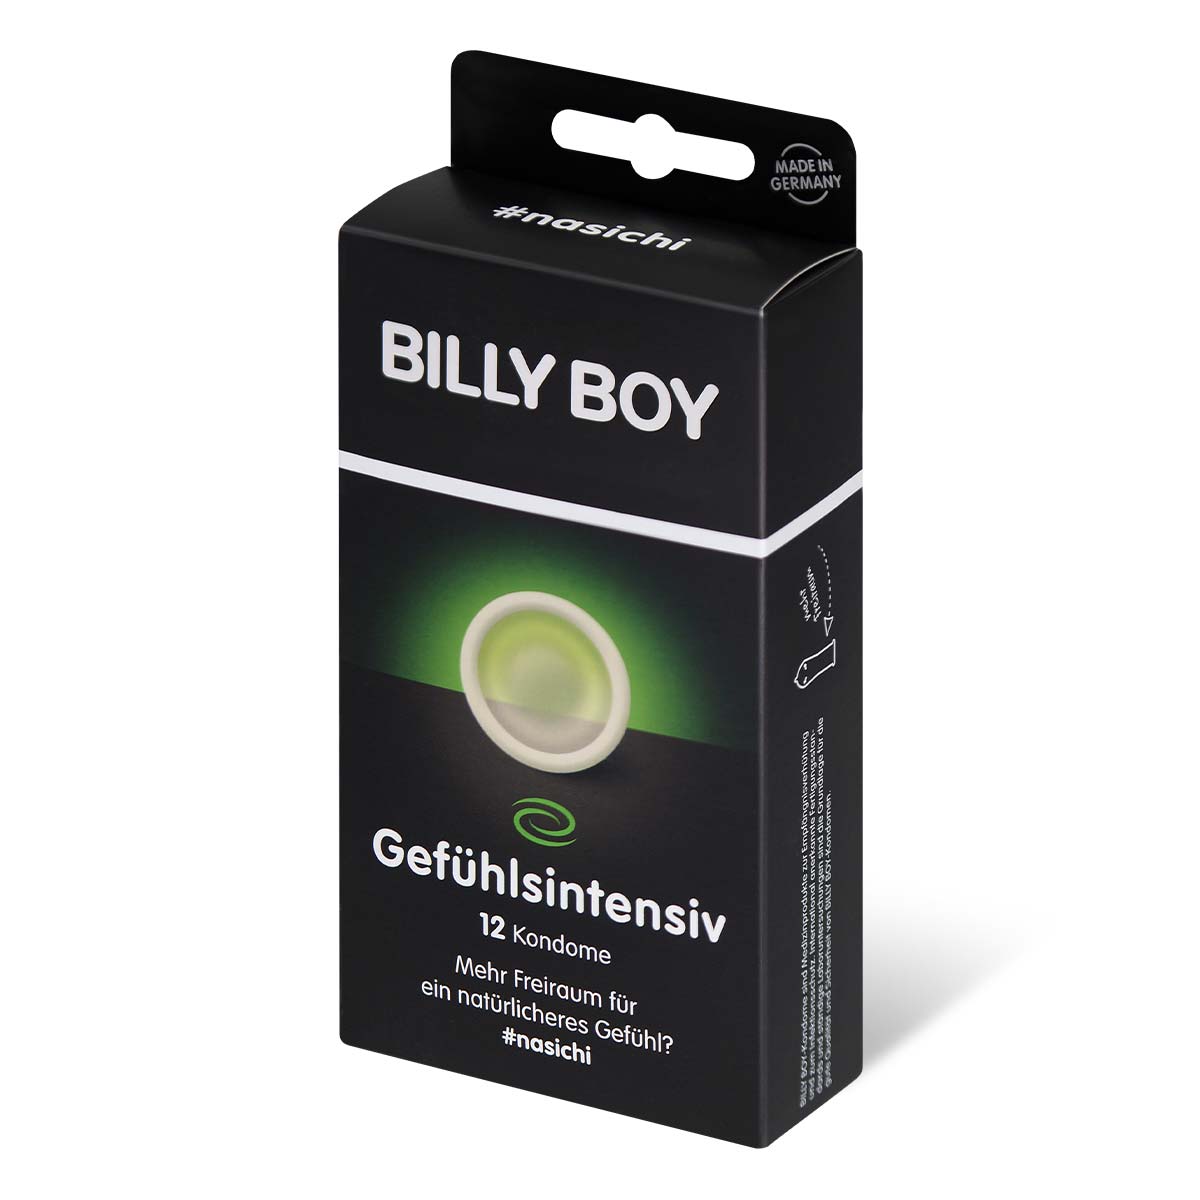 BILLY BOY 前端合身 12 片裝 乳膠安全套-p_1